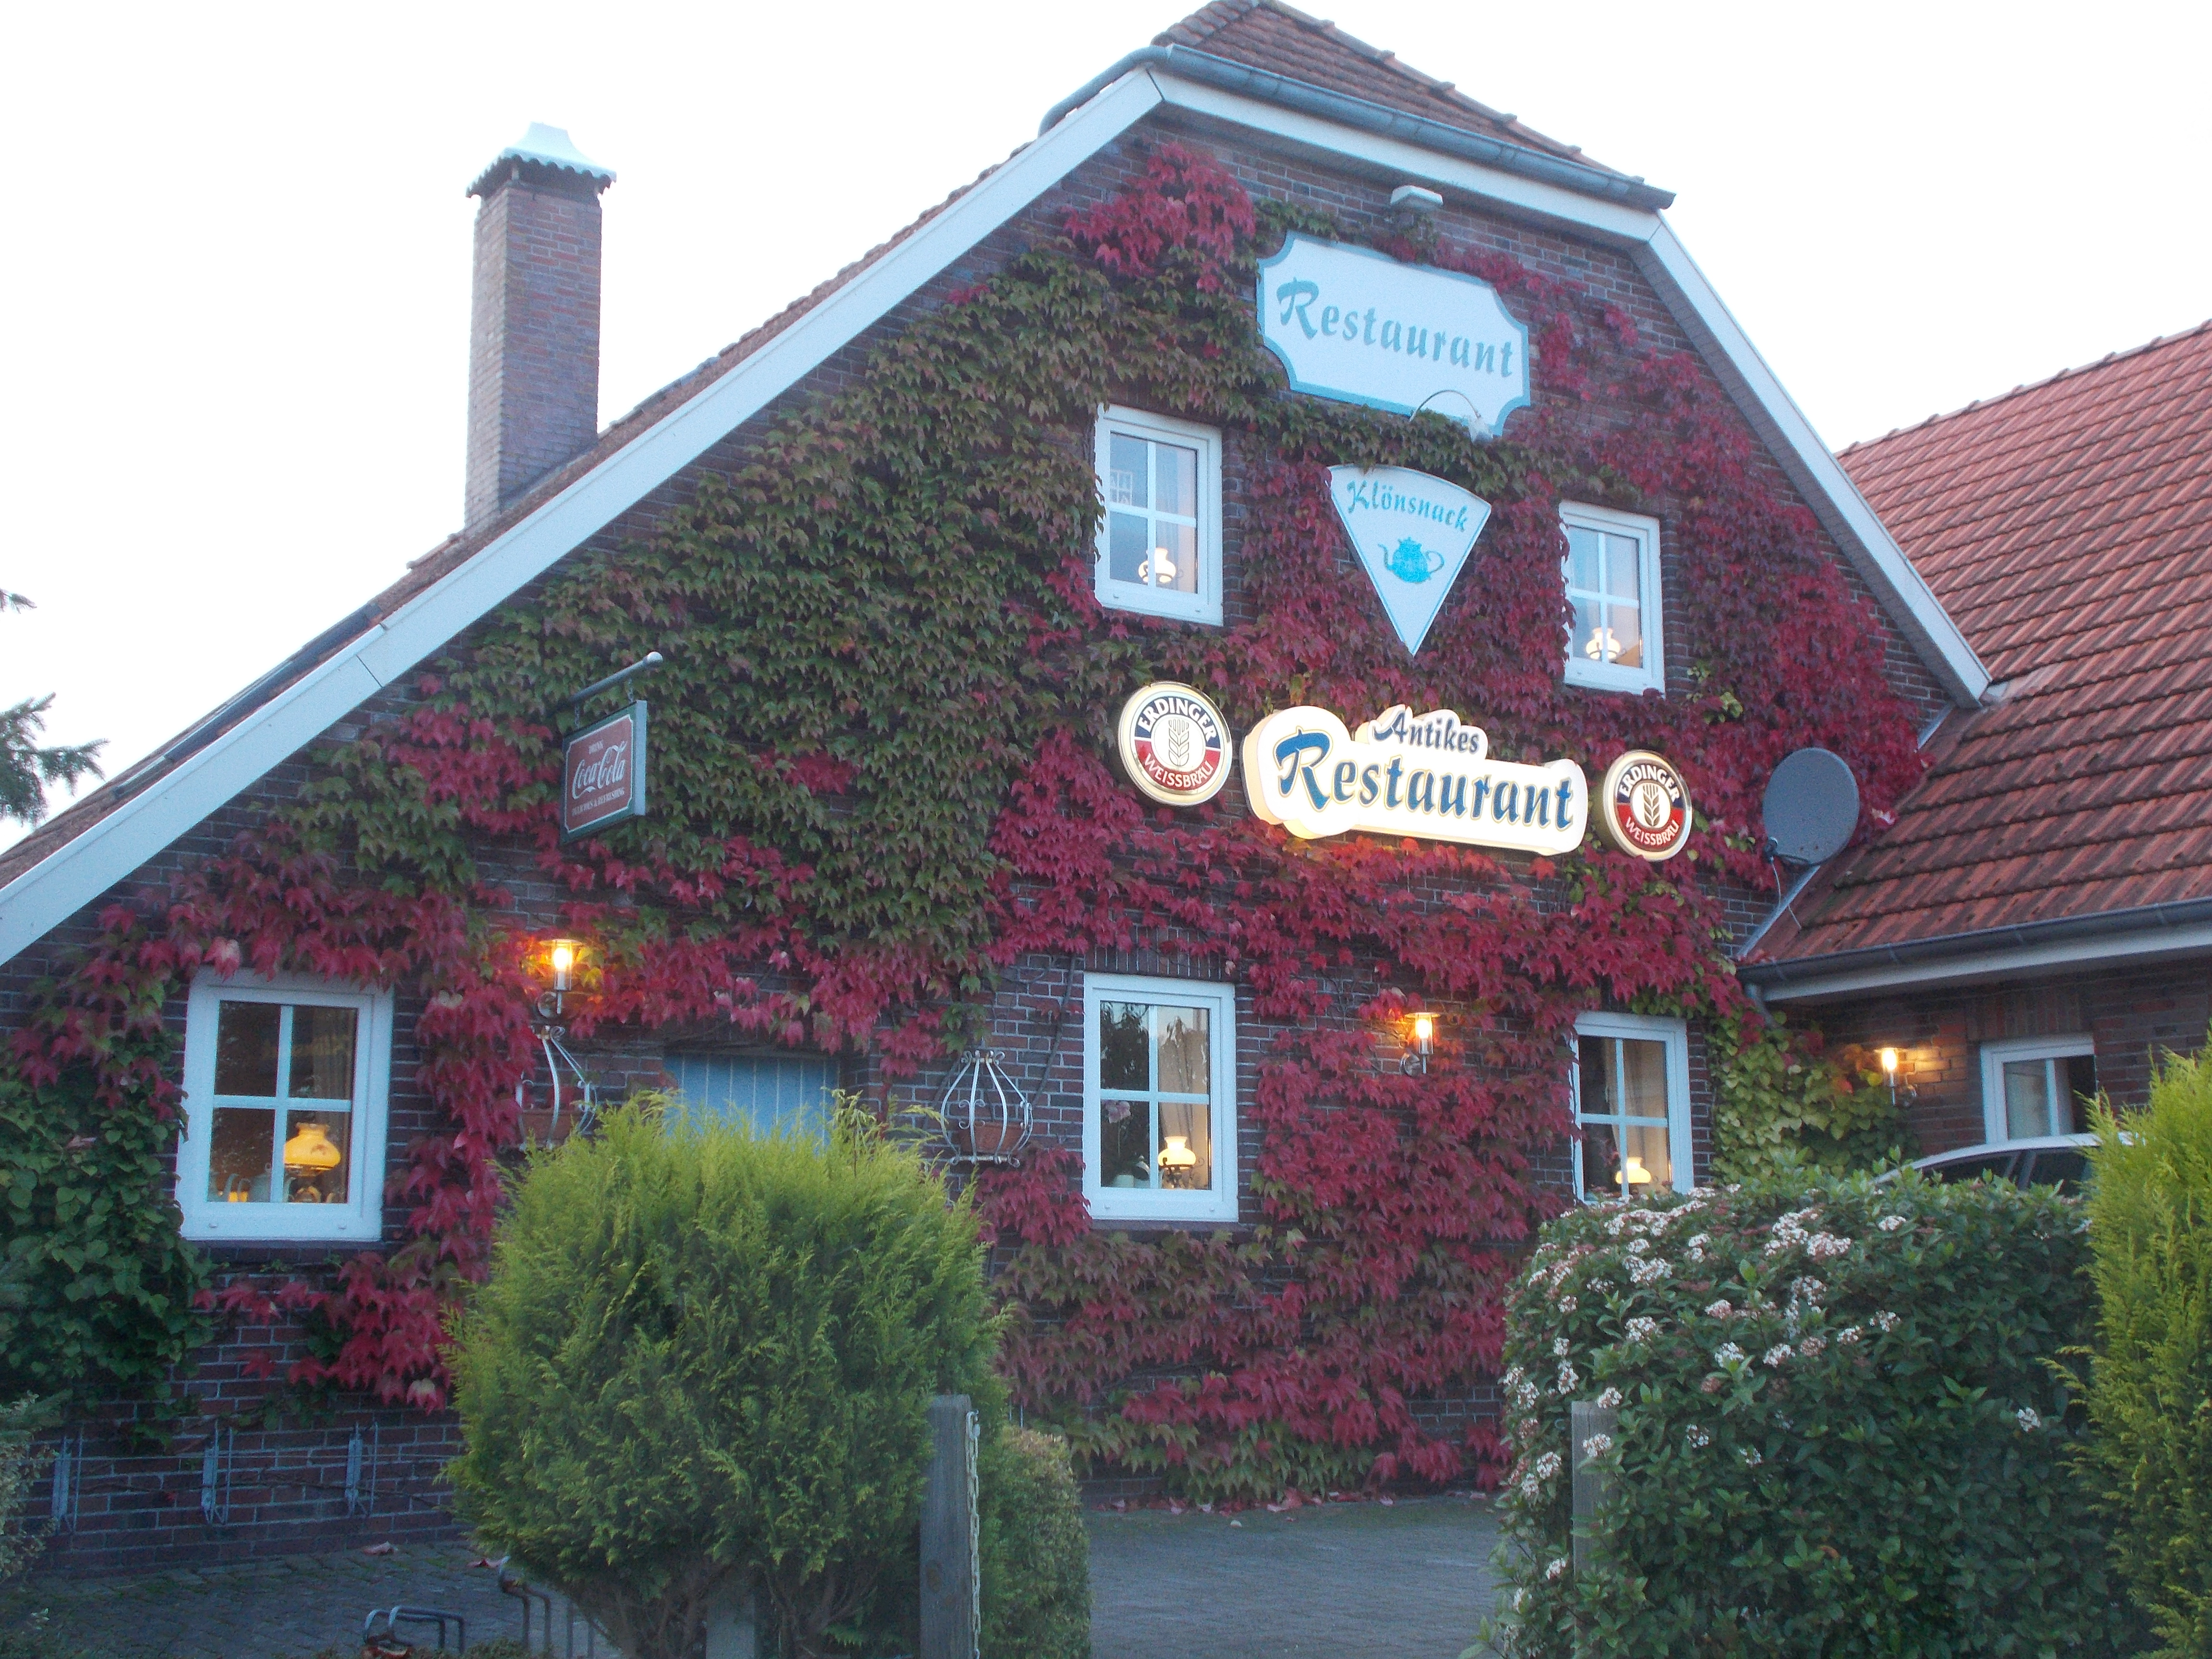 Bild 1 Restaurant Klönsnack in Wittmund